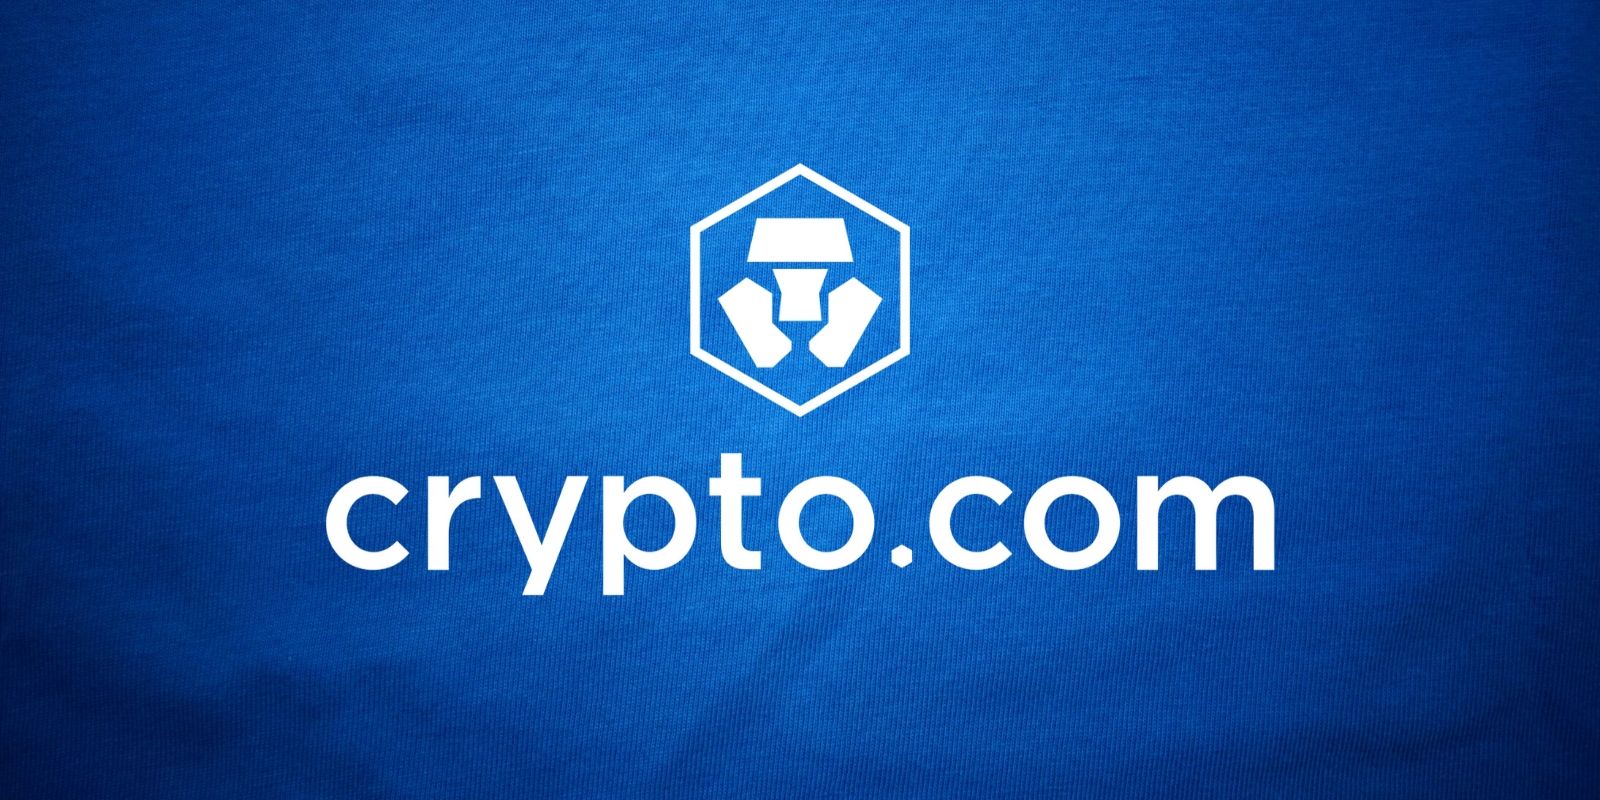 Crypto.com Crypto-monnaie en Chaque Wallet 29